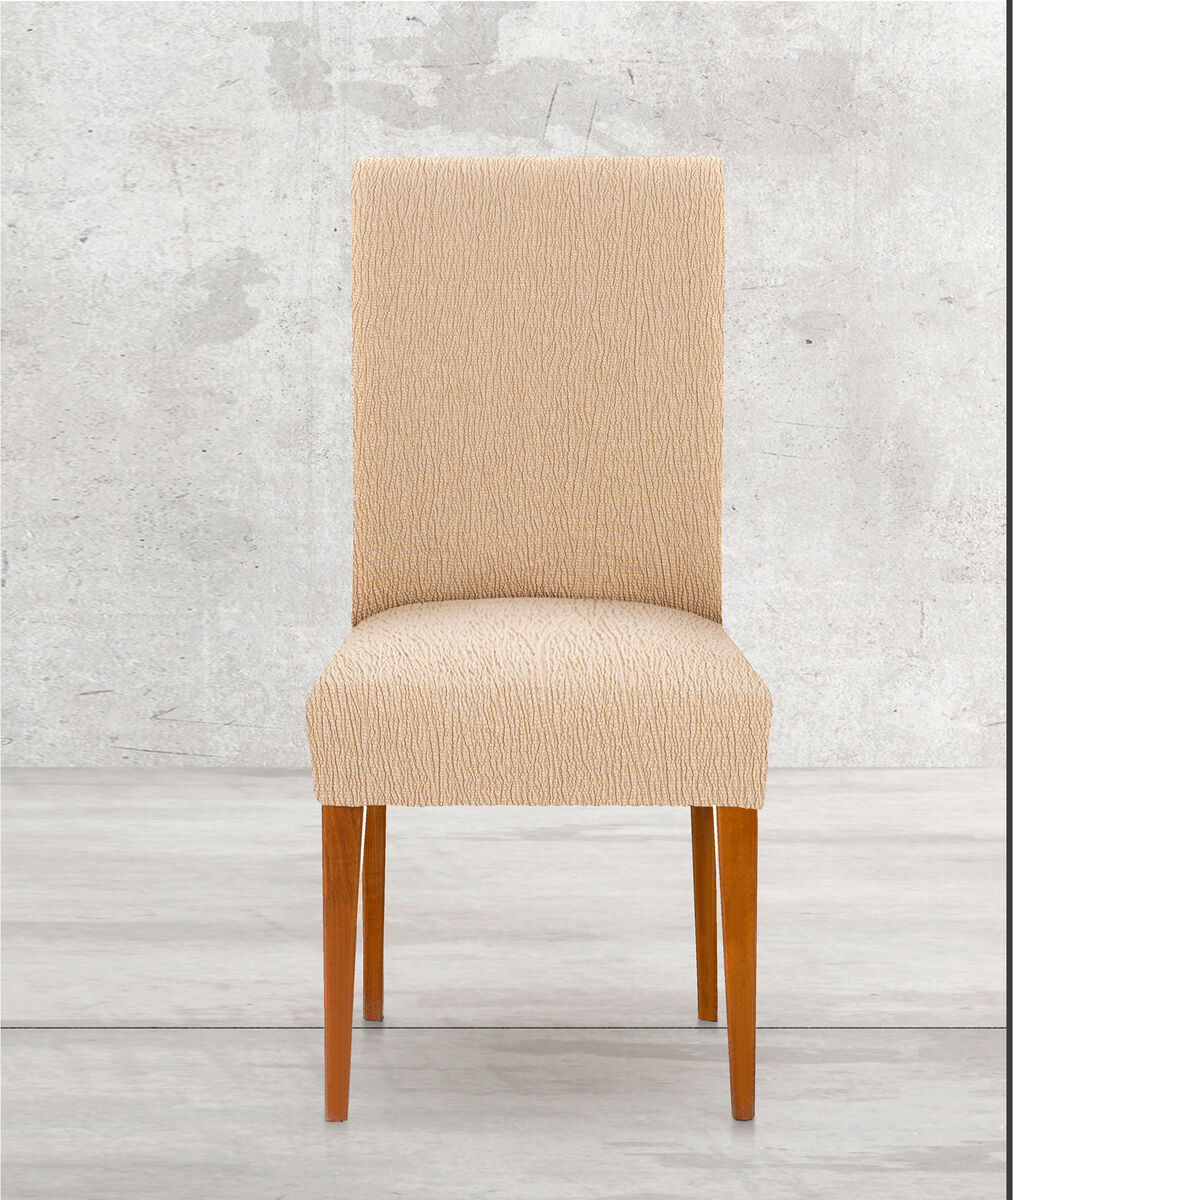 Chair Cover Eysa TROYA Beige 50 x 55 x 50 cm 2 Units